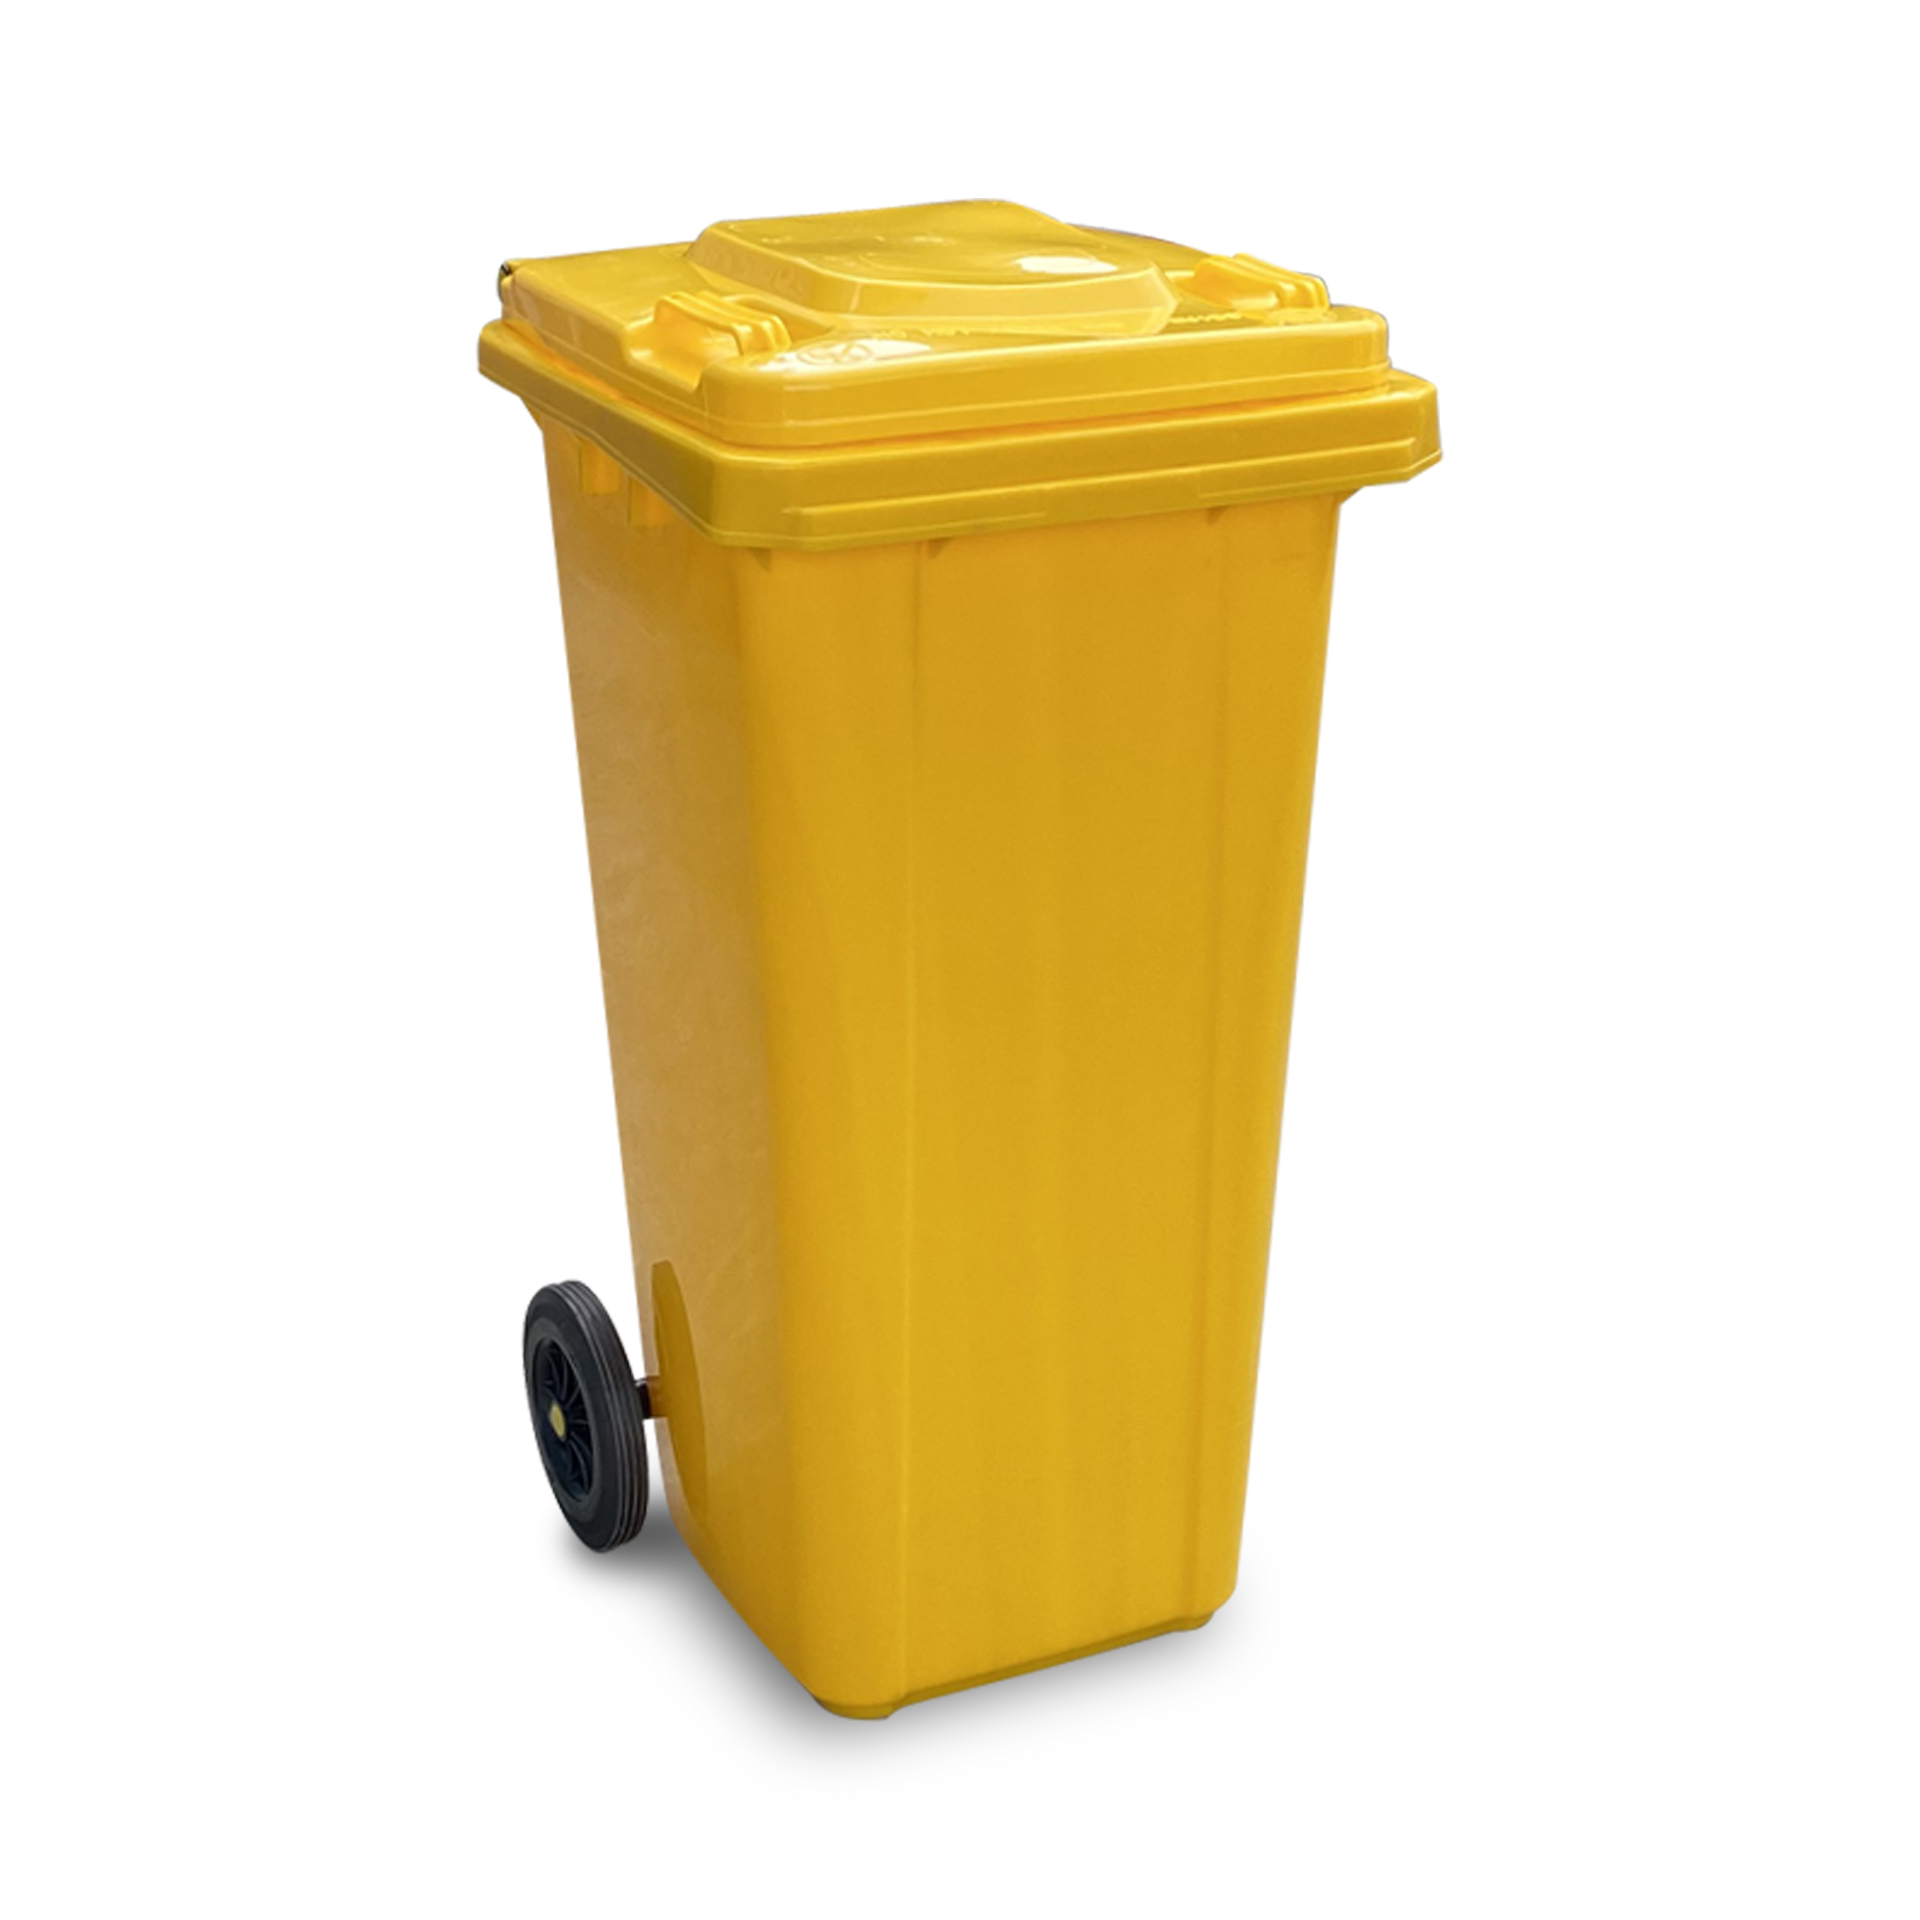 ถังขยะเทศบาล COMBI WARE ขนาด 120 ลิตร พร้อมล้อ ไม่มีเท้าเหยียบ สีเหลือง